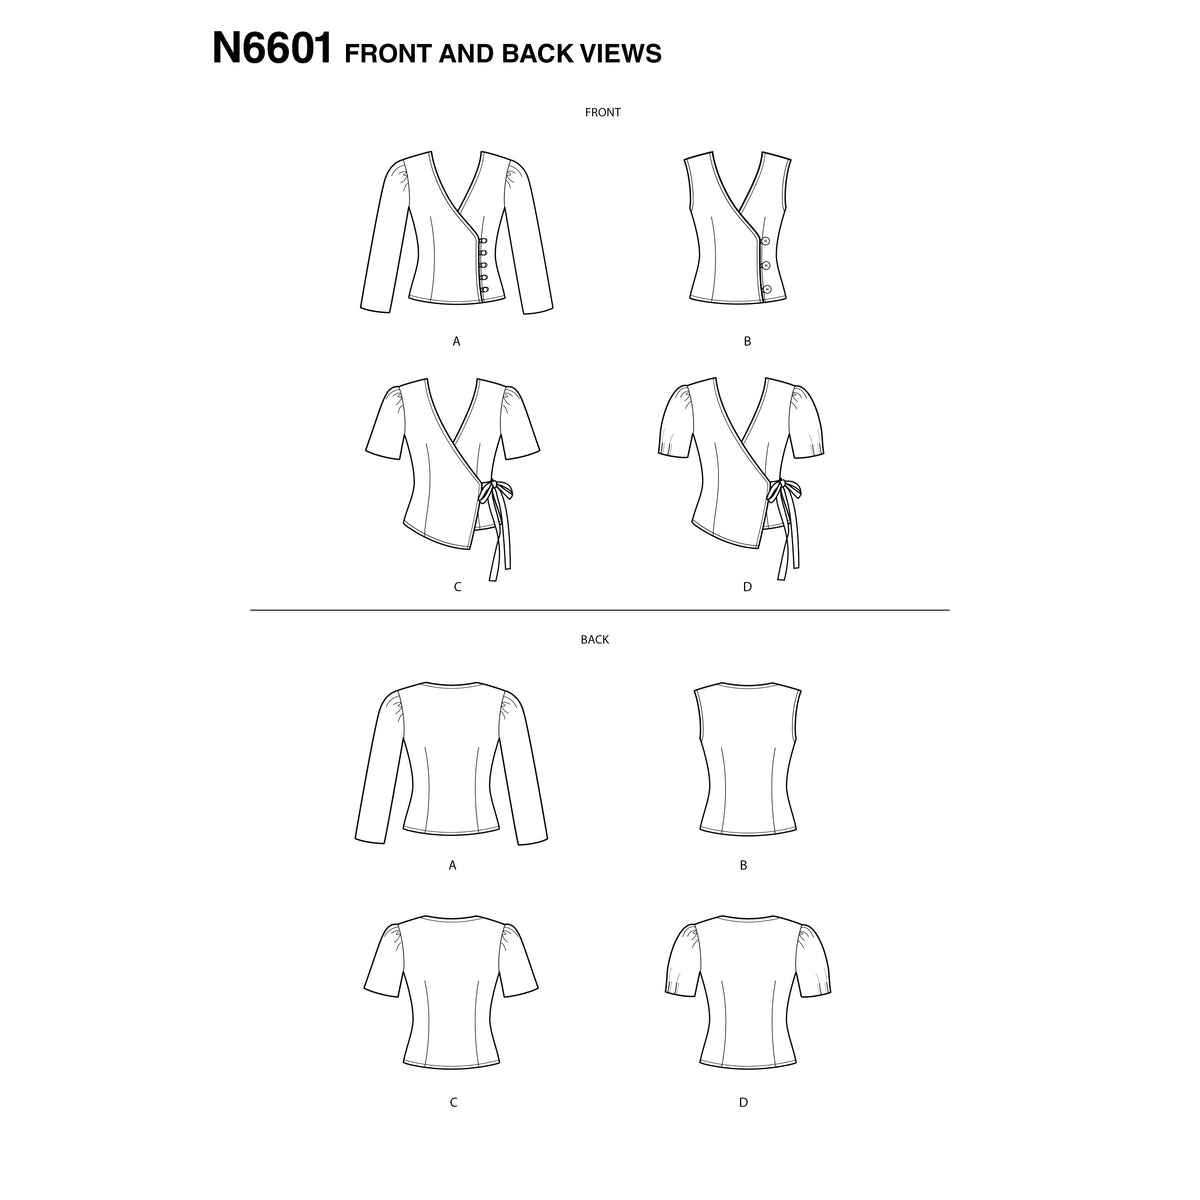 6601 New Look Sewing Pattern N6601 Misses' Tops